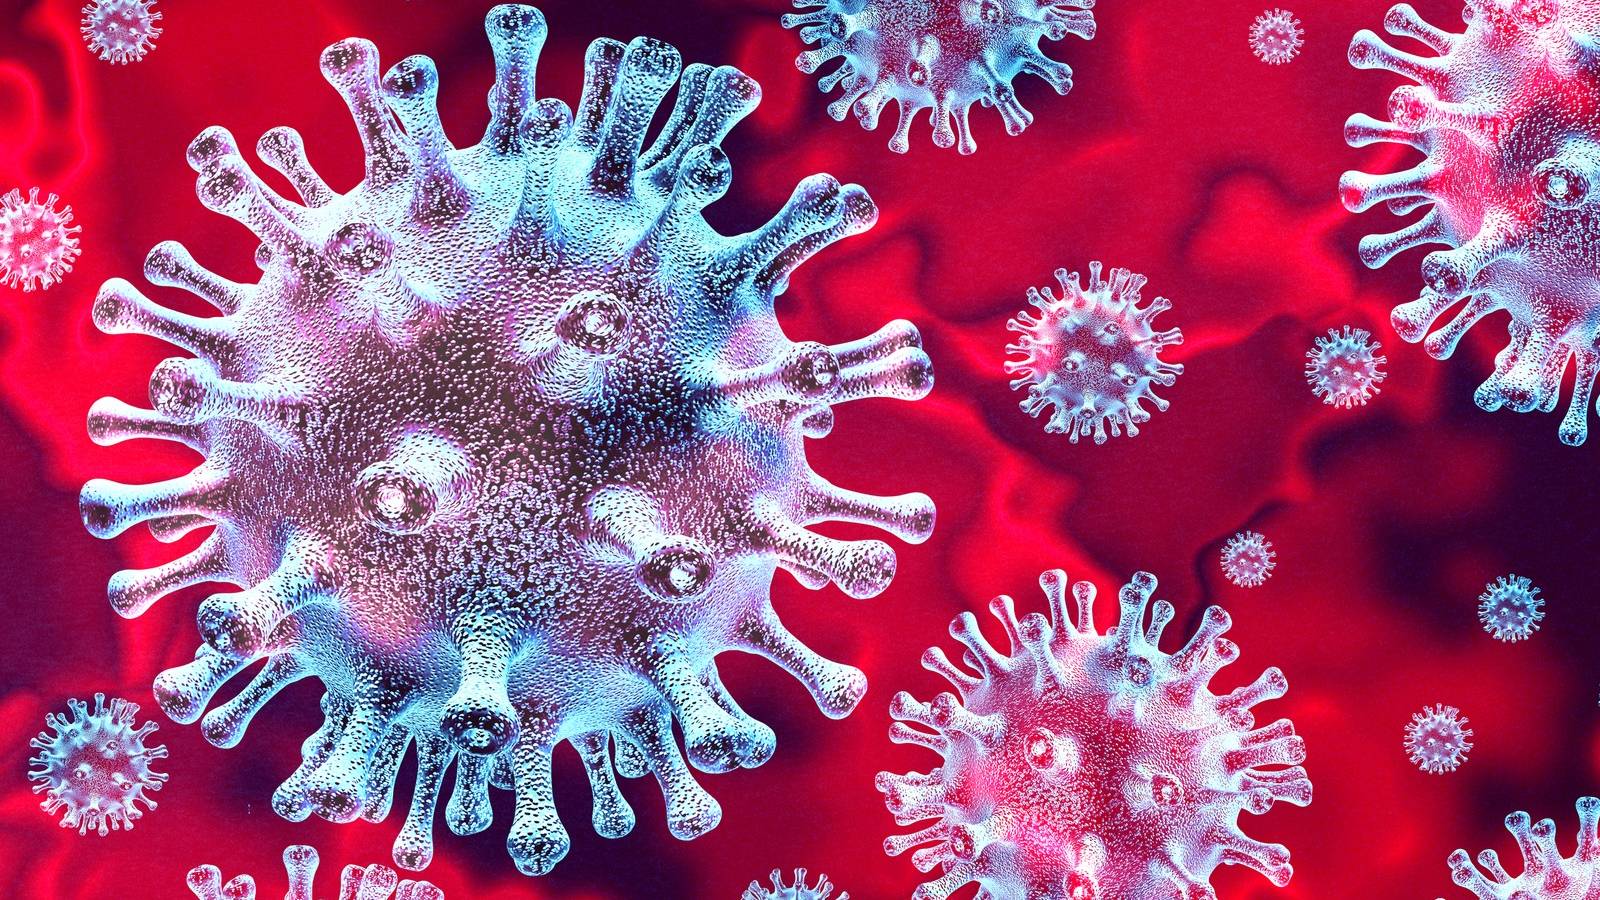 Coronavirus anunt dsu romania 5 martie